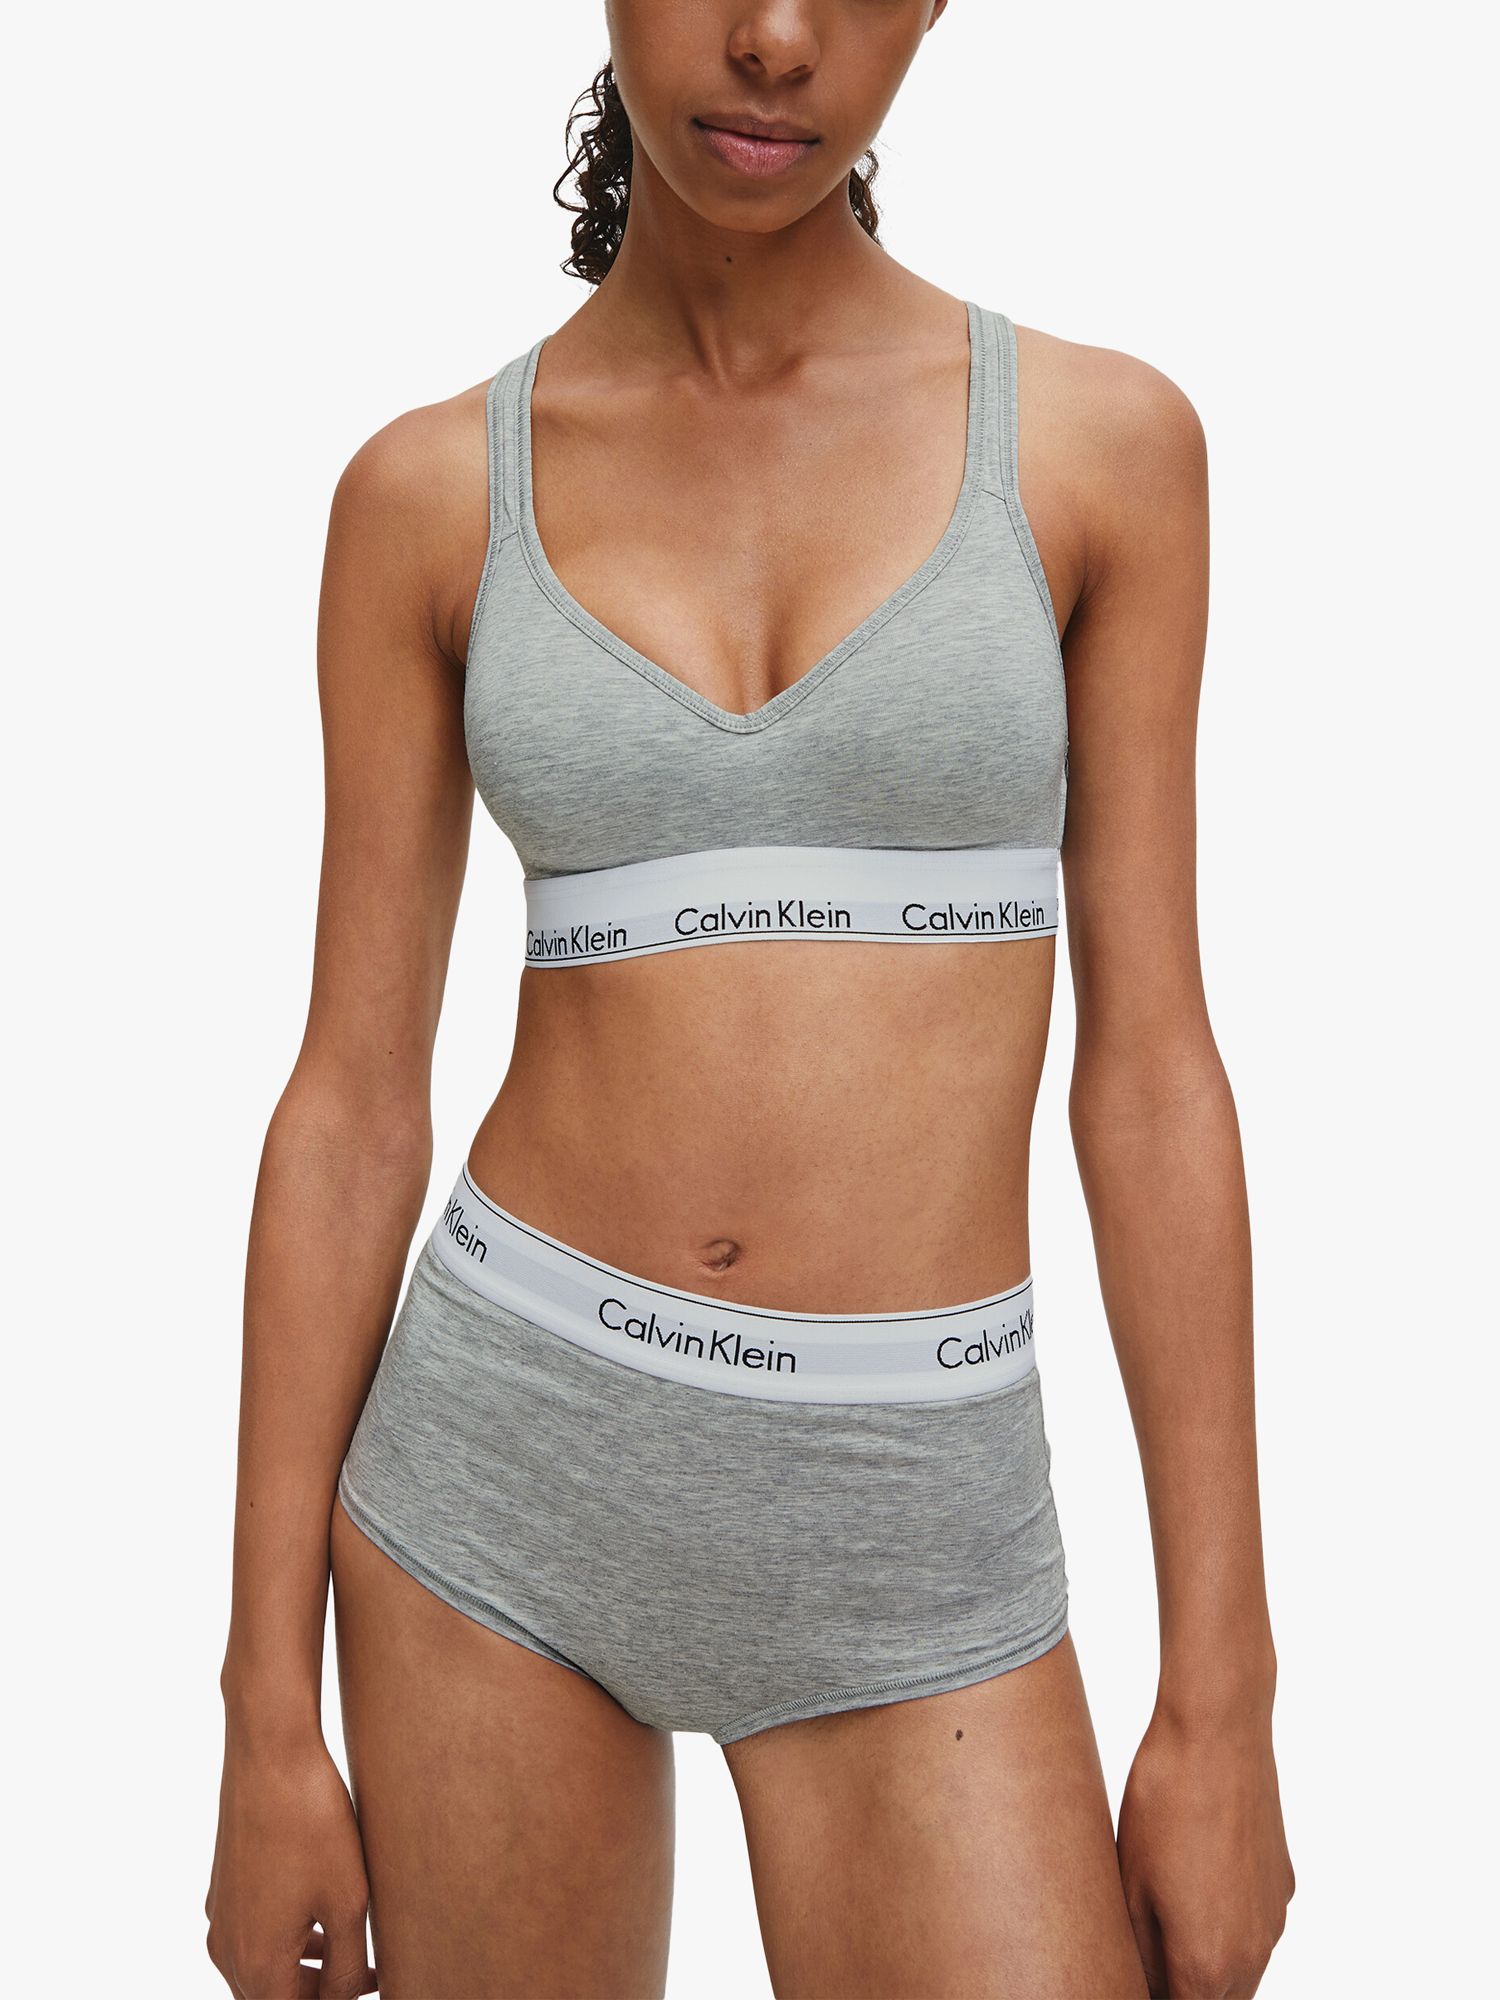 Calvin Klein CK ONE COTTON - Sports Bra - Women's - grey heather